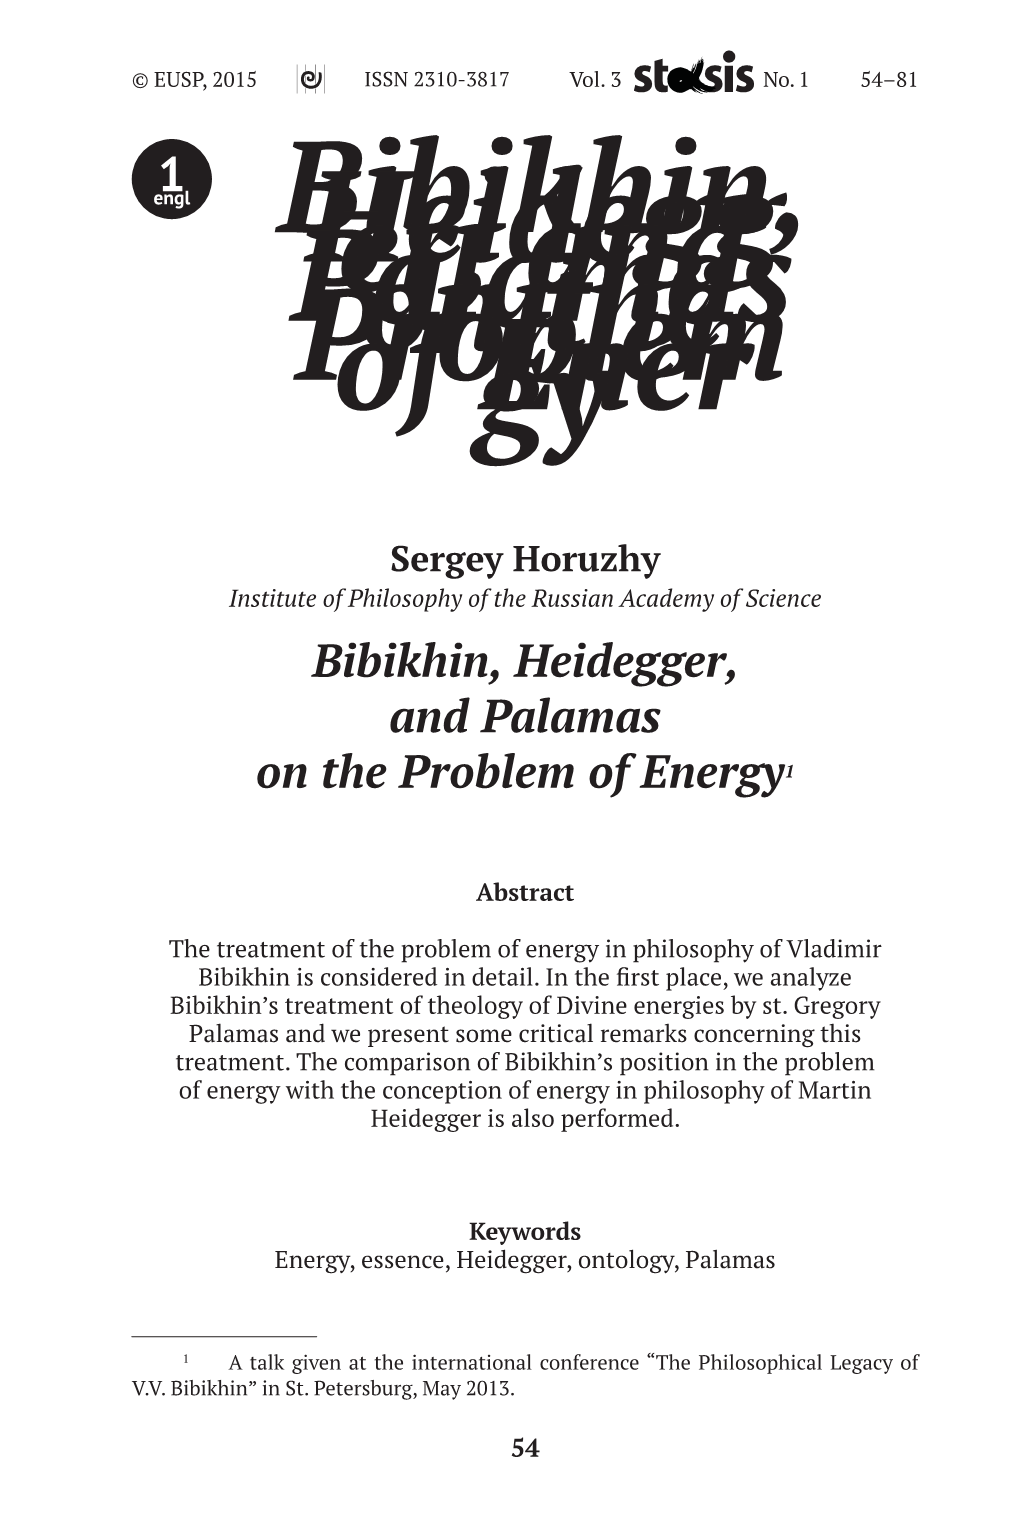 Bibikhin, Heidegger, and Palamas on the Problem of Energy1